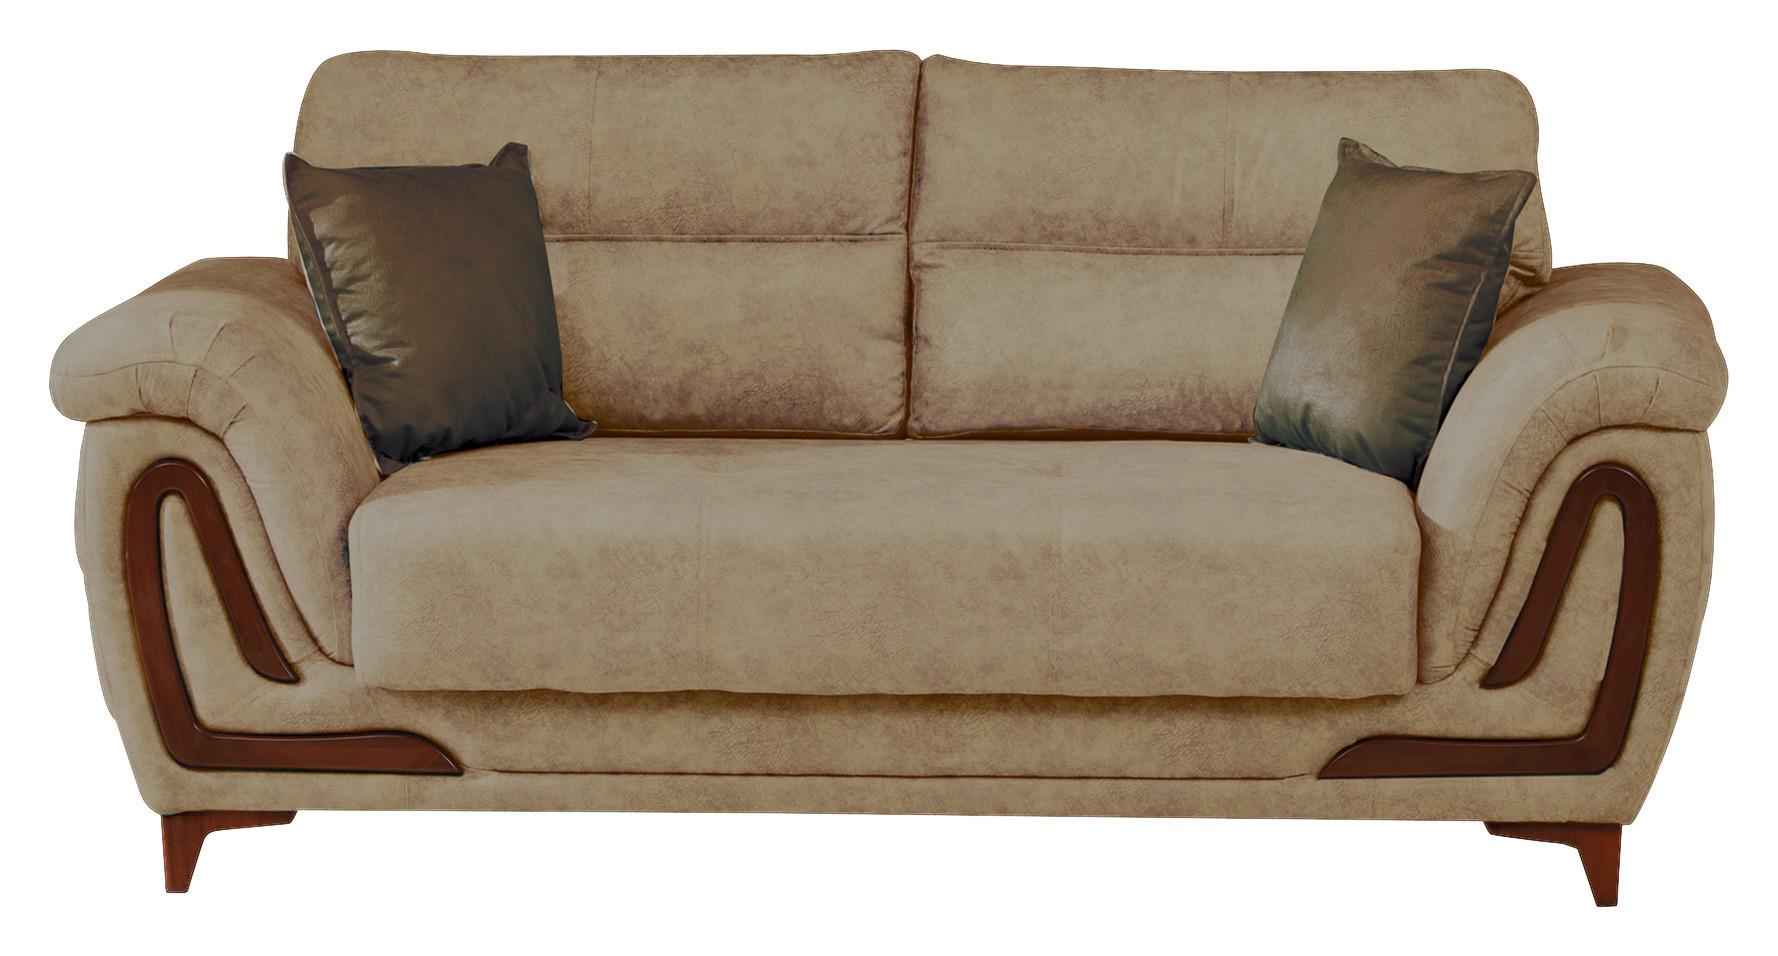 2-Sitzer-Sofa Alfa Mit Stauraum Webstoff Creme - Dunkelbraun/Beige, Design, Textil (191/87/98cm) - Livetastic